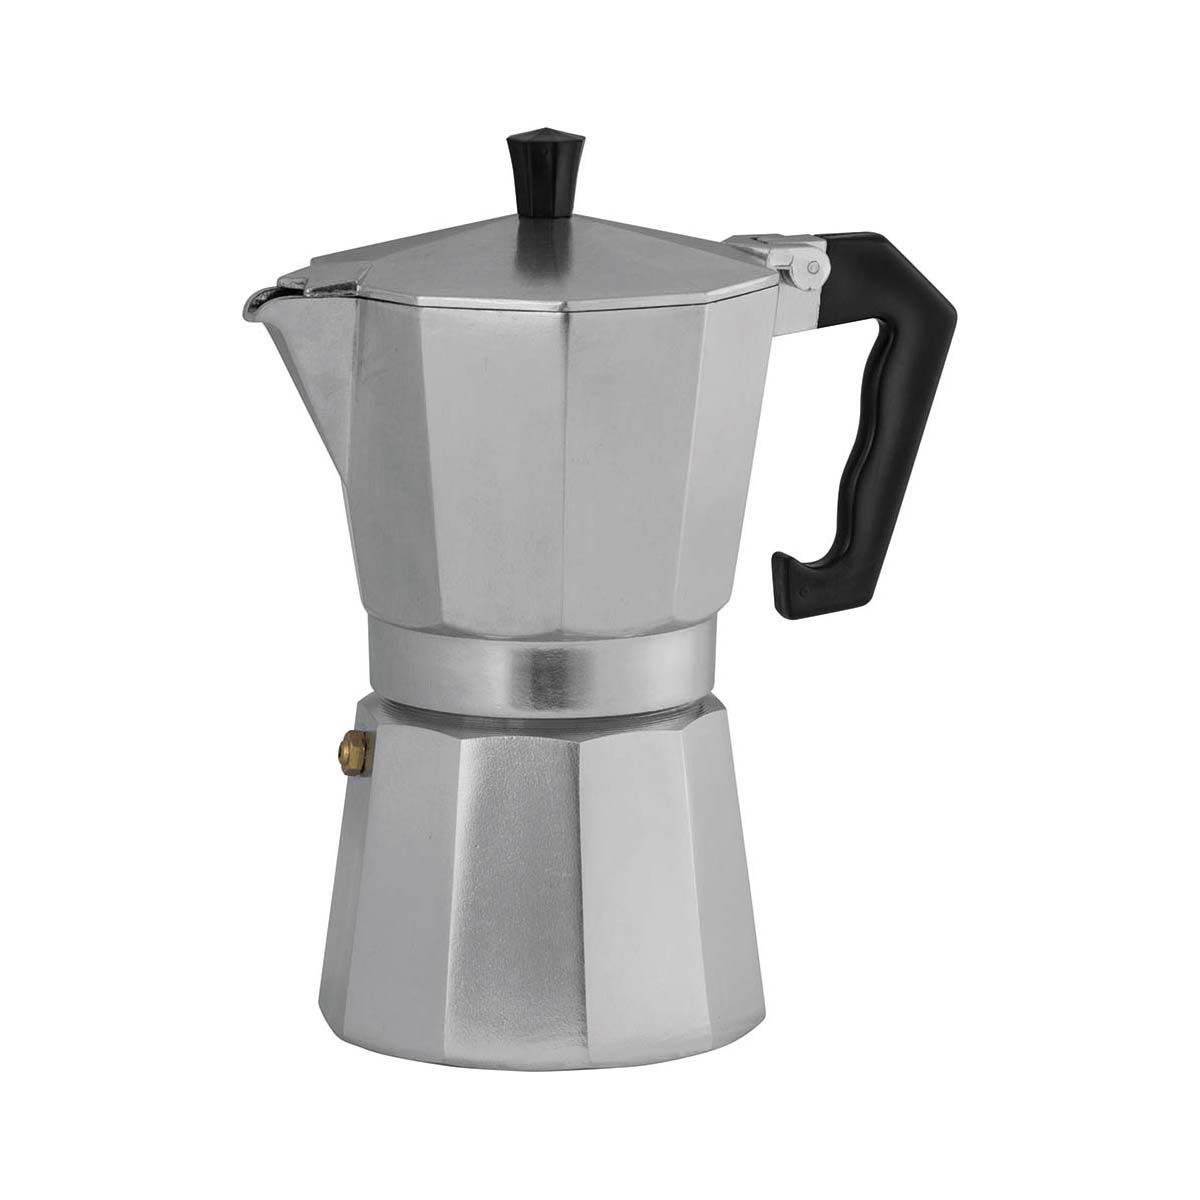 Avanti Classic Pro Espresso Coffee Maker 600ml